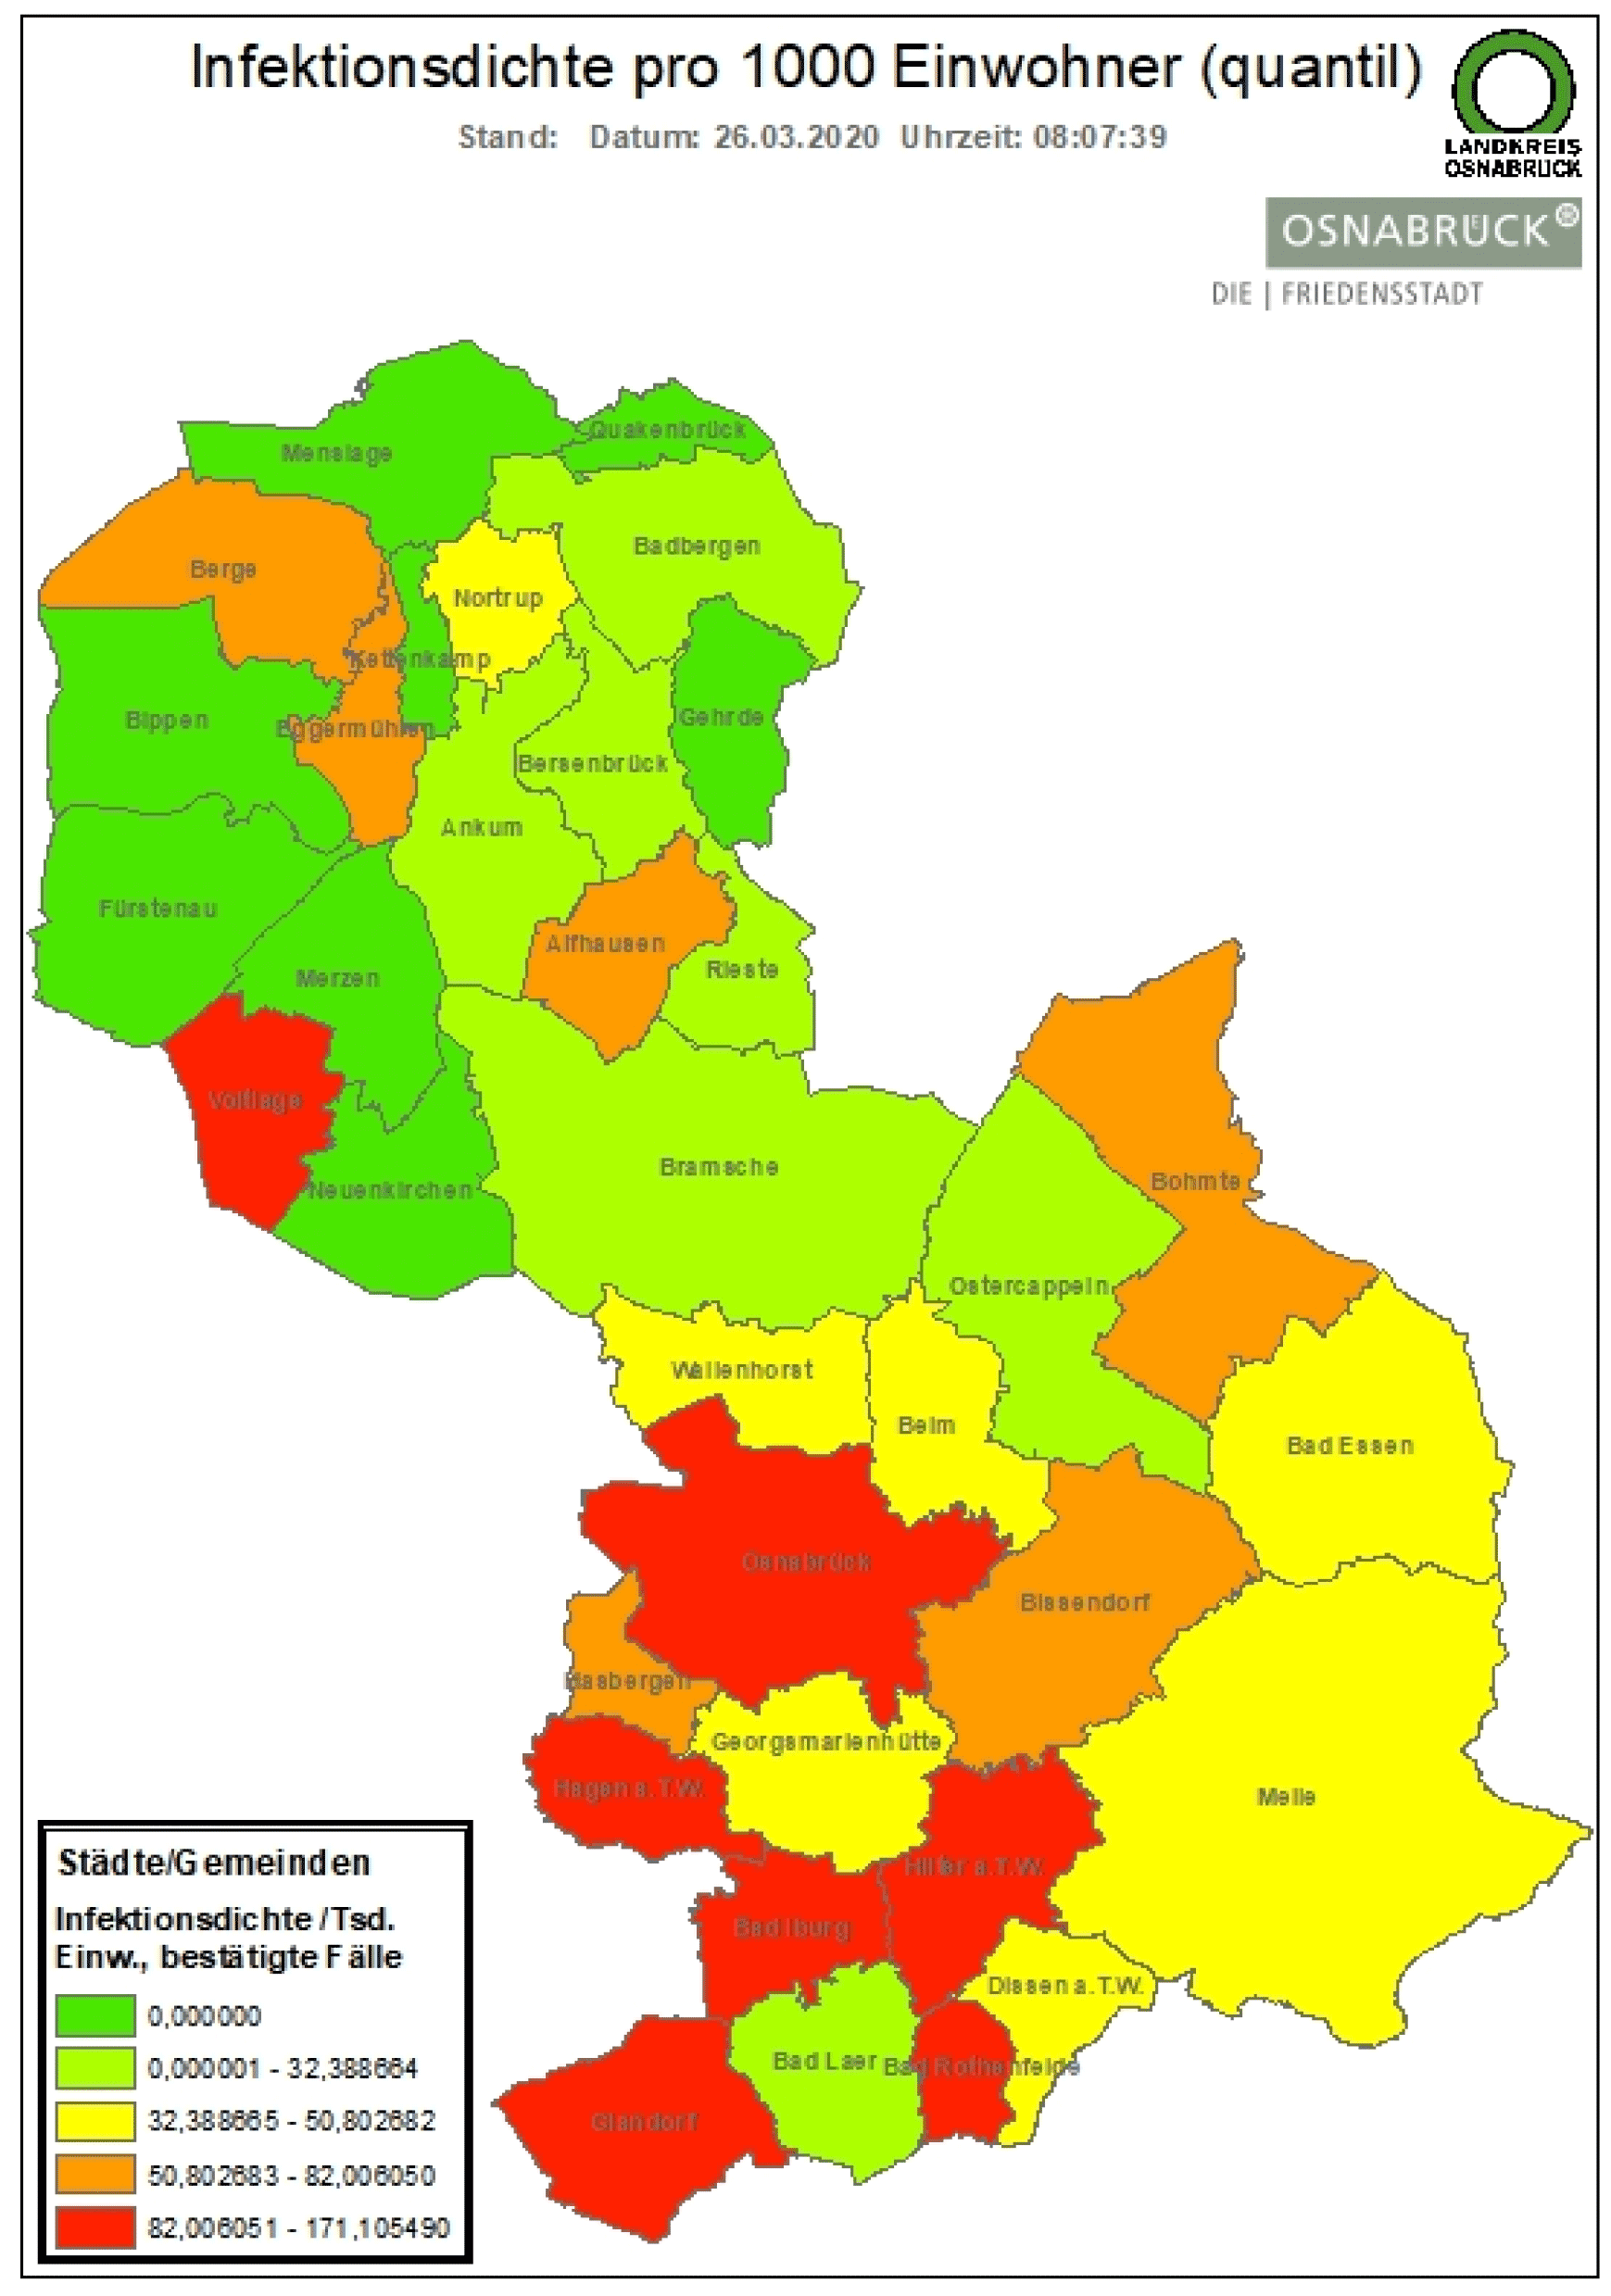 Bad Iburg, Hagen a.TW., Glandorf, Hilter, Bad Rothenfelde und Voltage sind die "Corona-Hotspots" in der Region Osnabrück